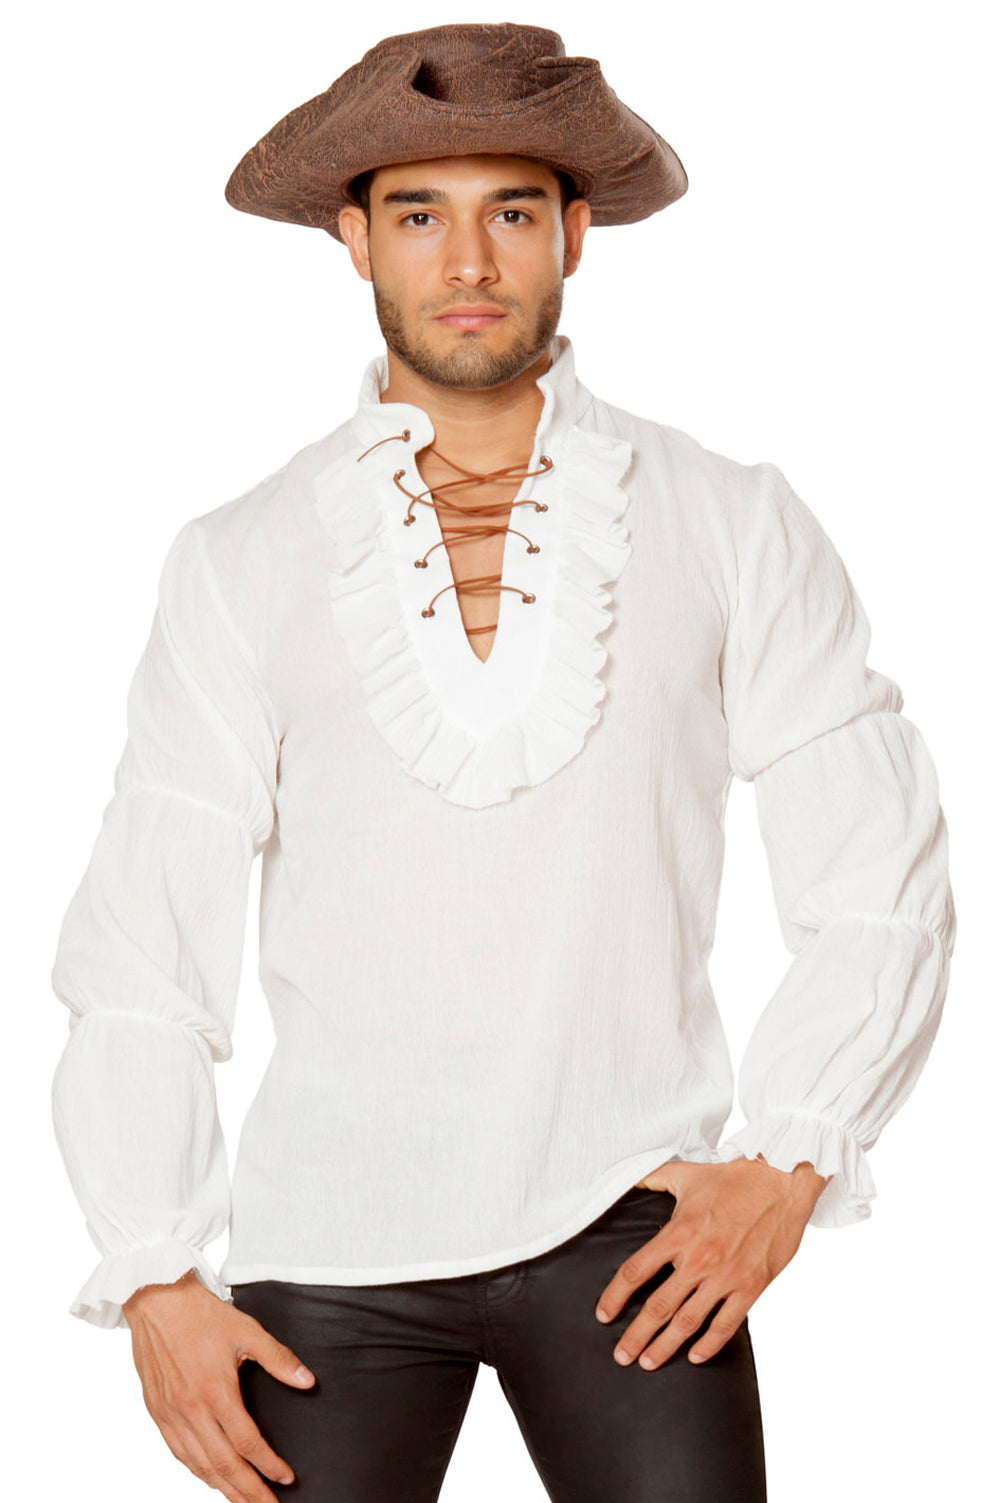 international male pirate shirt